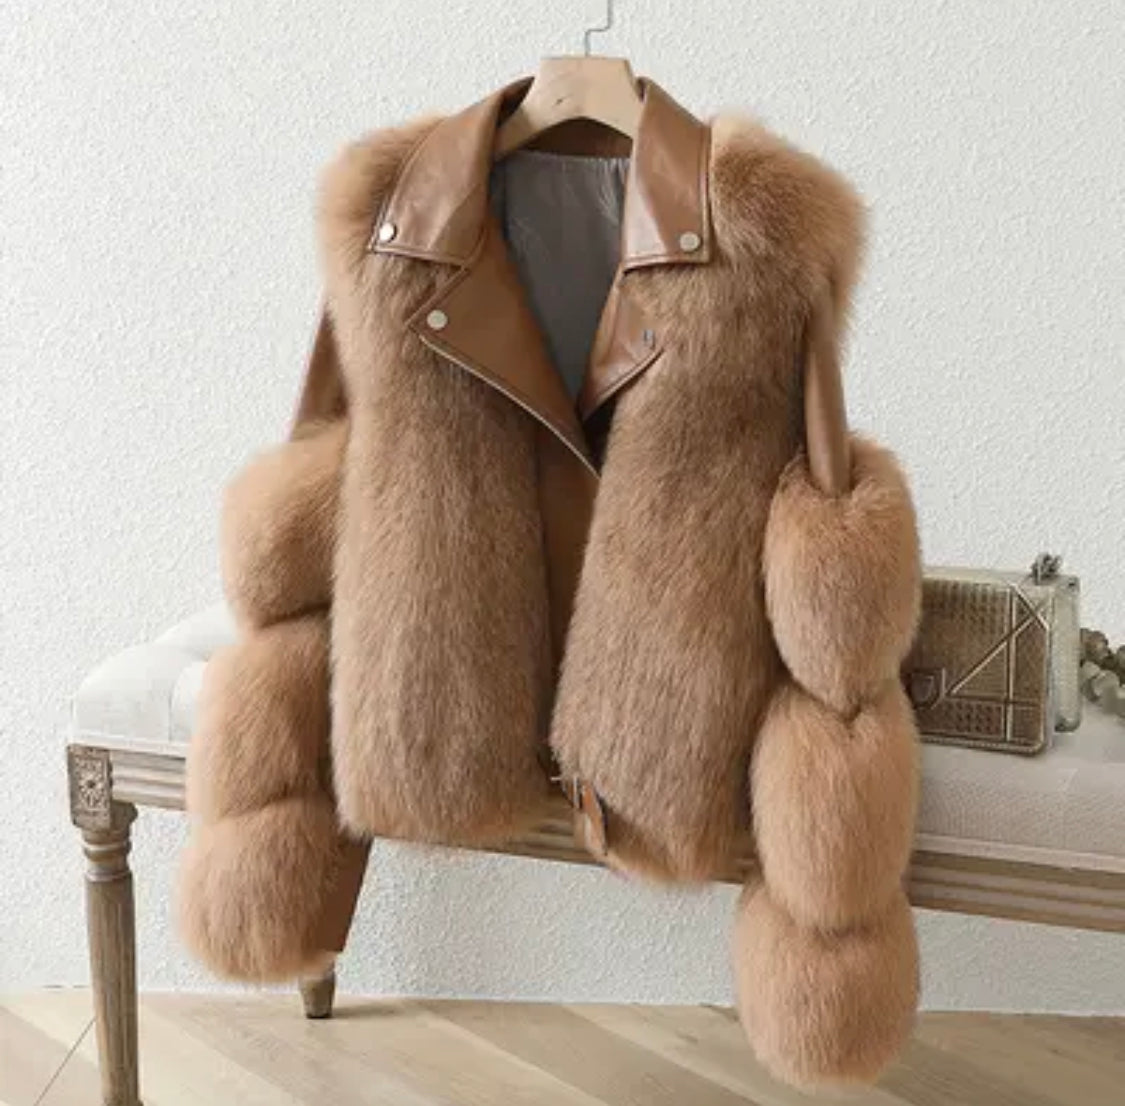 Luxury Leather Fur Jacket